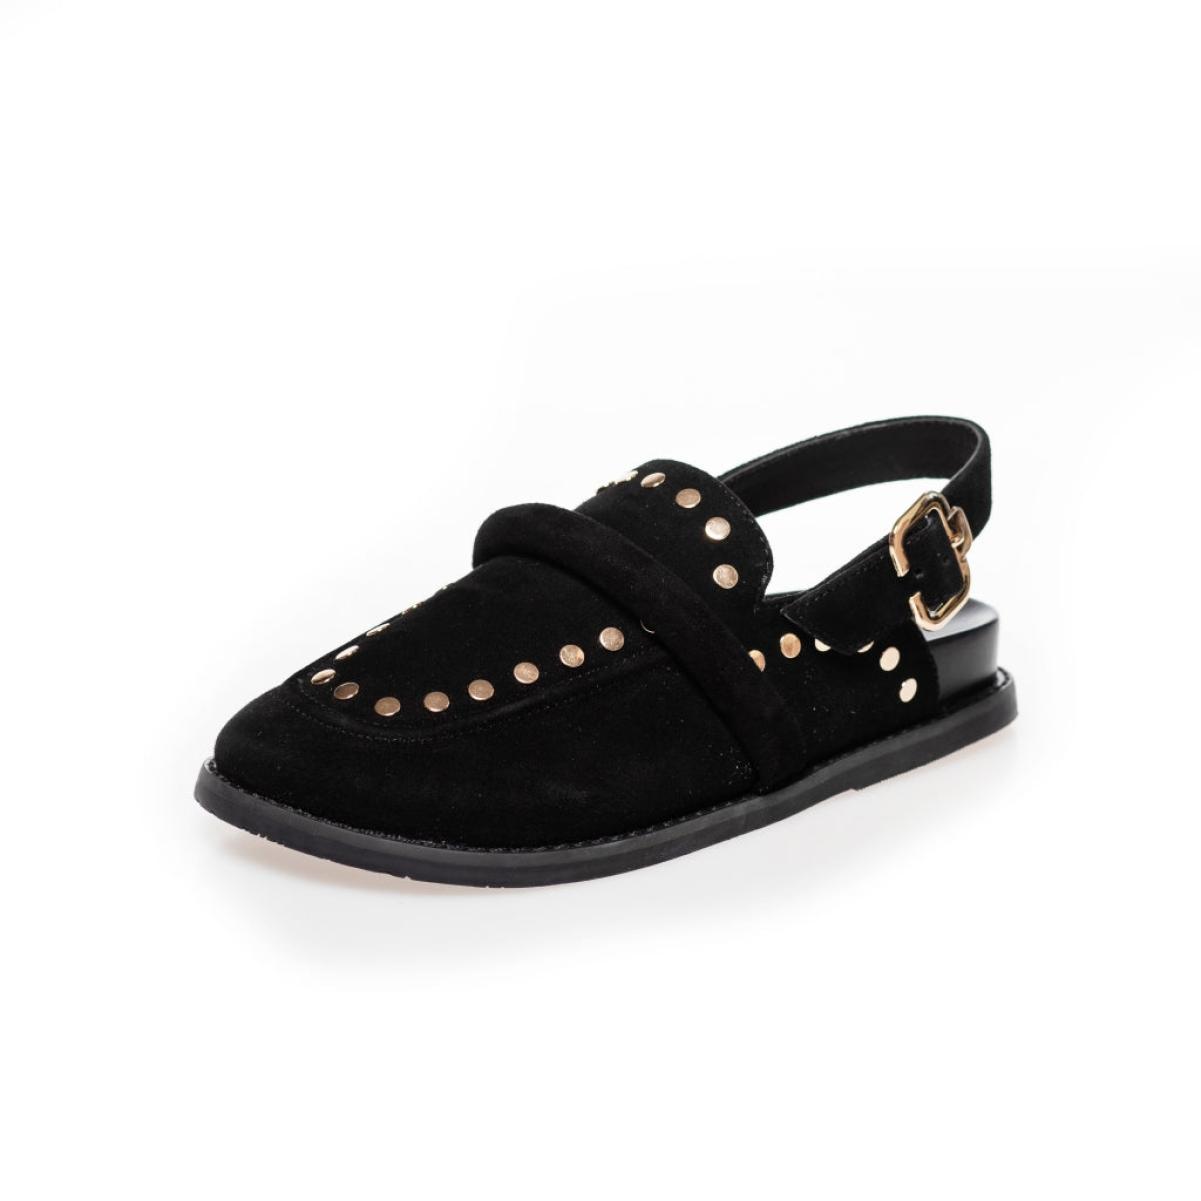 Loafers Exclusive Copenhagen Shoes Milla Shoes - Black Suede Women - 2